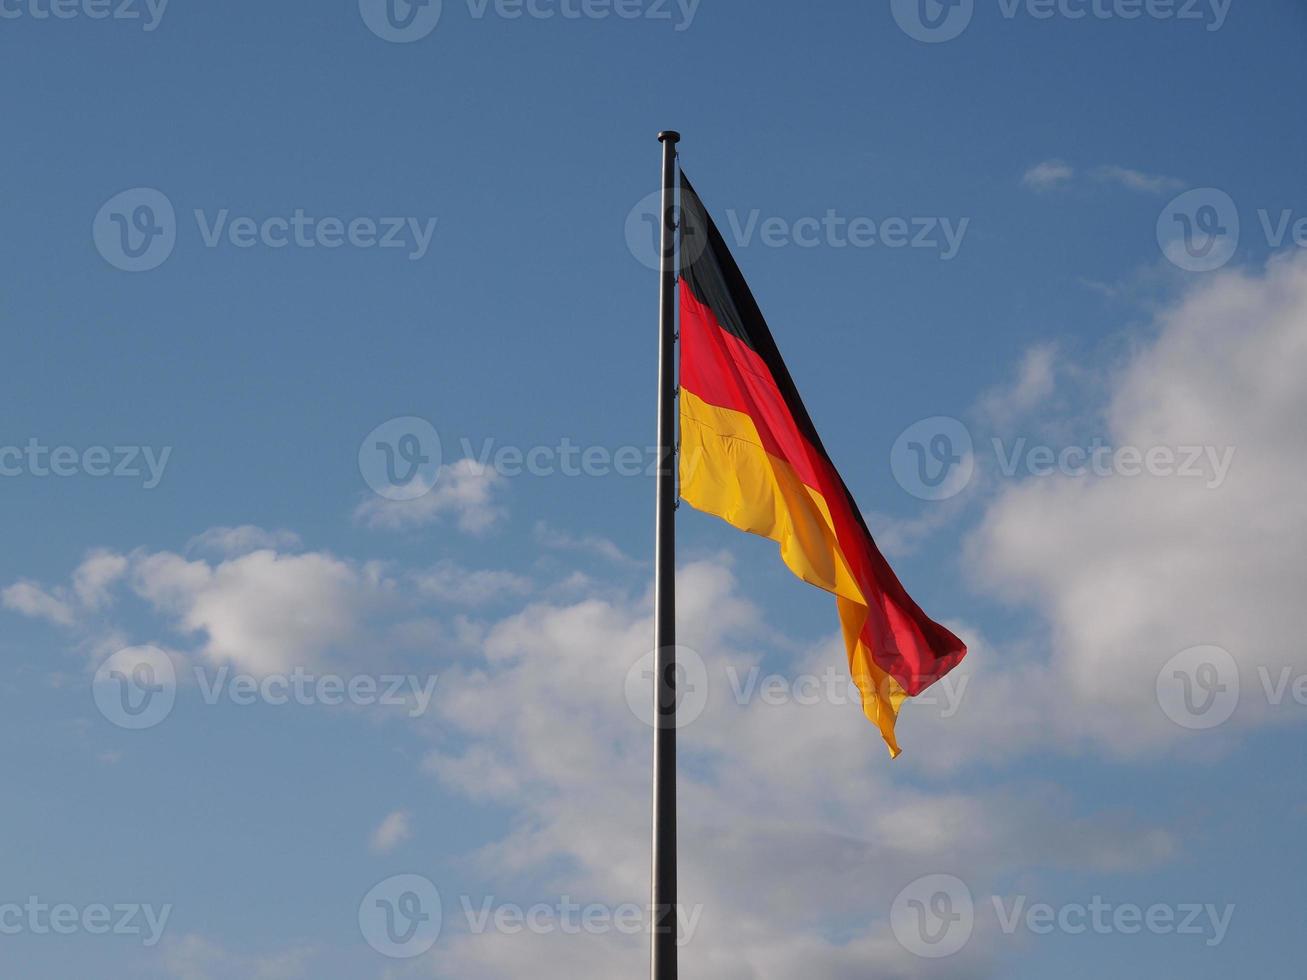 drapeau allemand sur ciel bleu photo